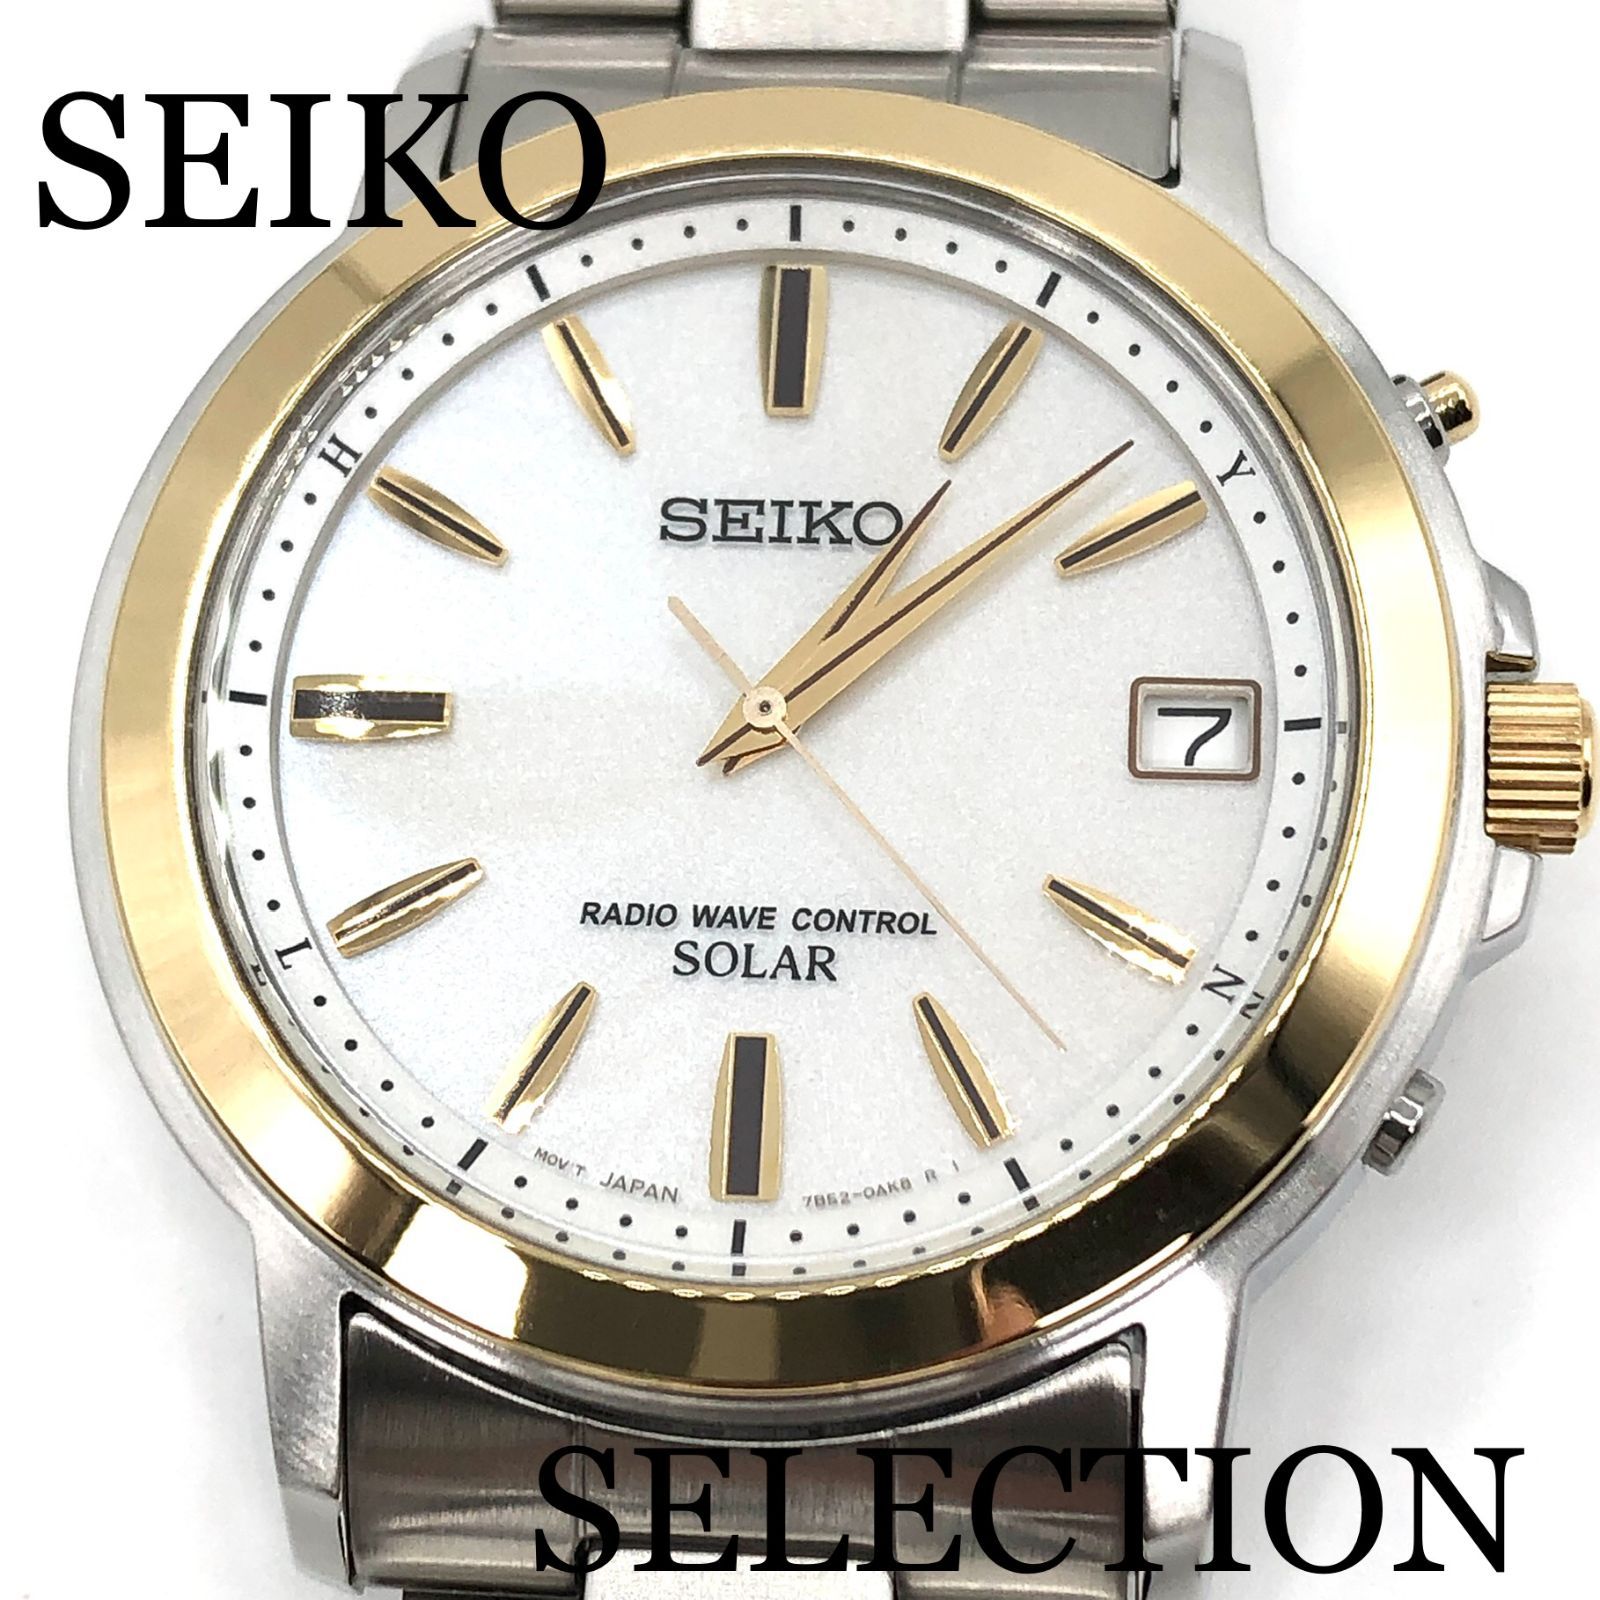 新品正規品『SEIKO SELECTION』セイコー セレクション ソーラー電波時計 メンズ SBTM170【送料無料】